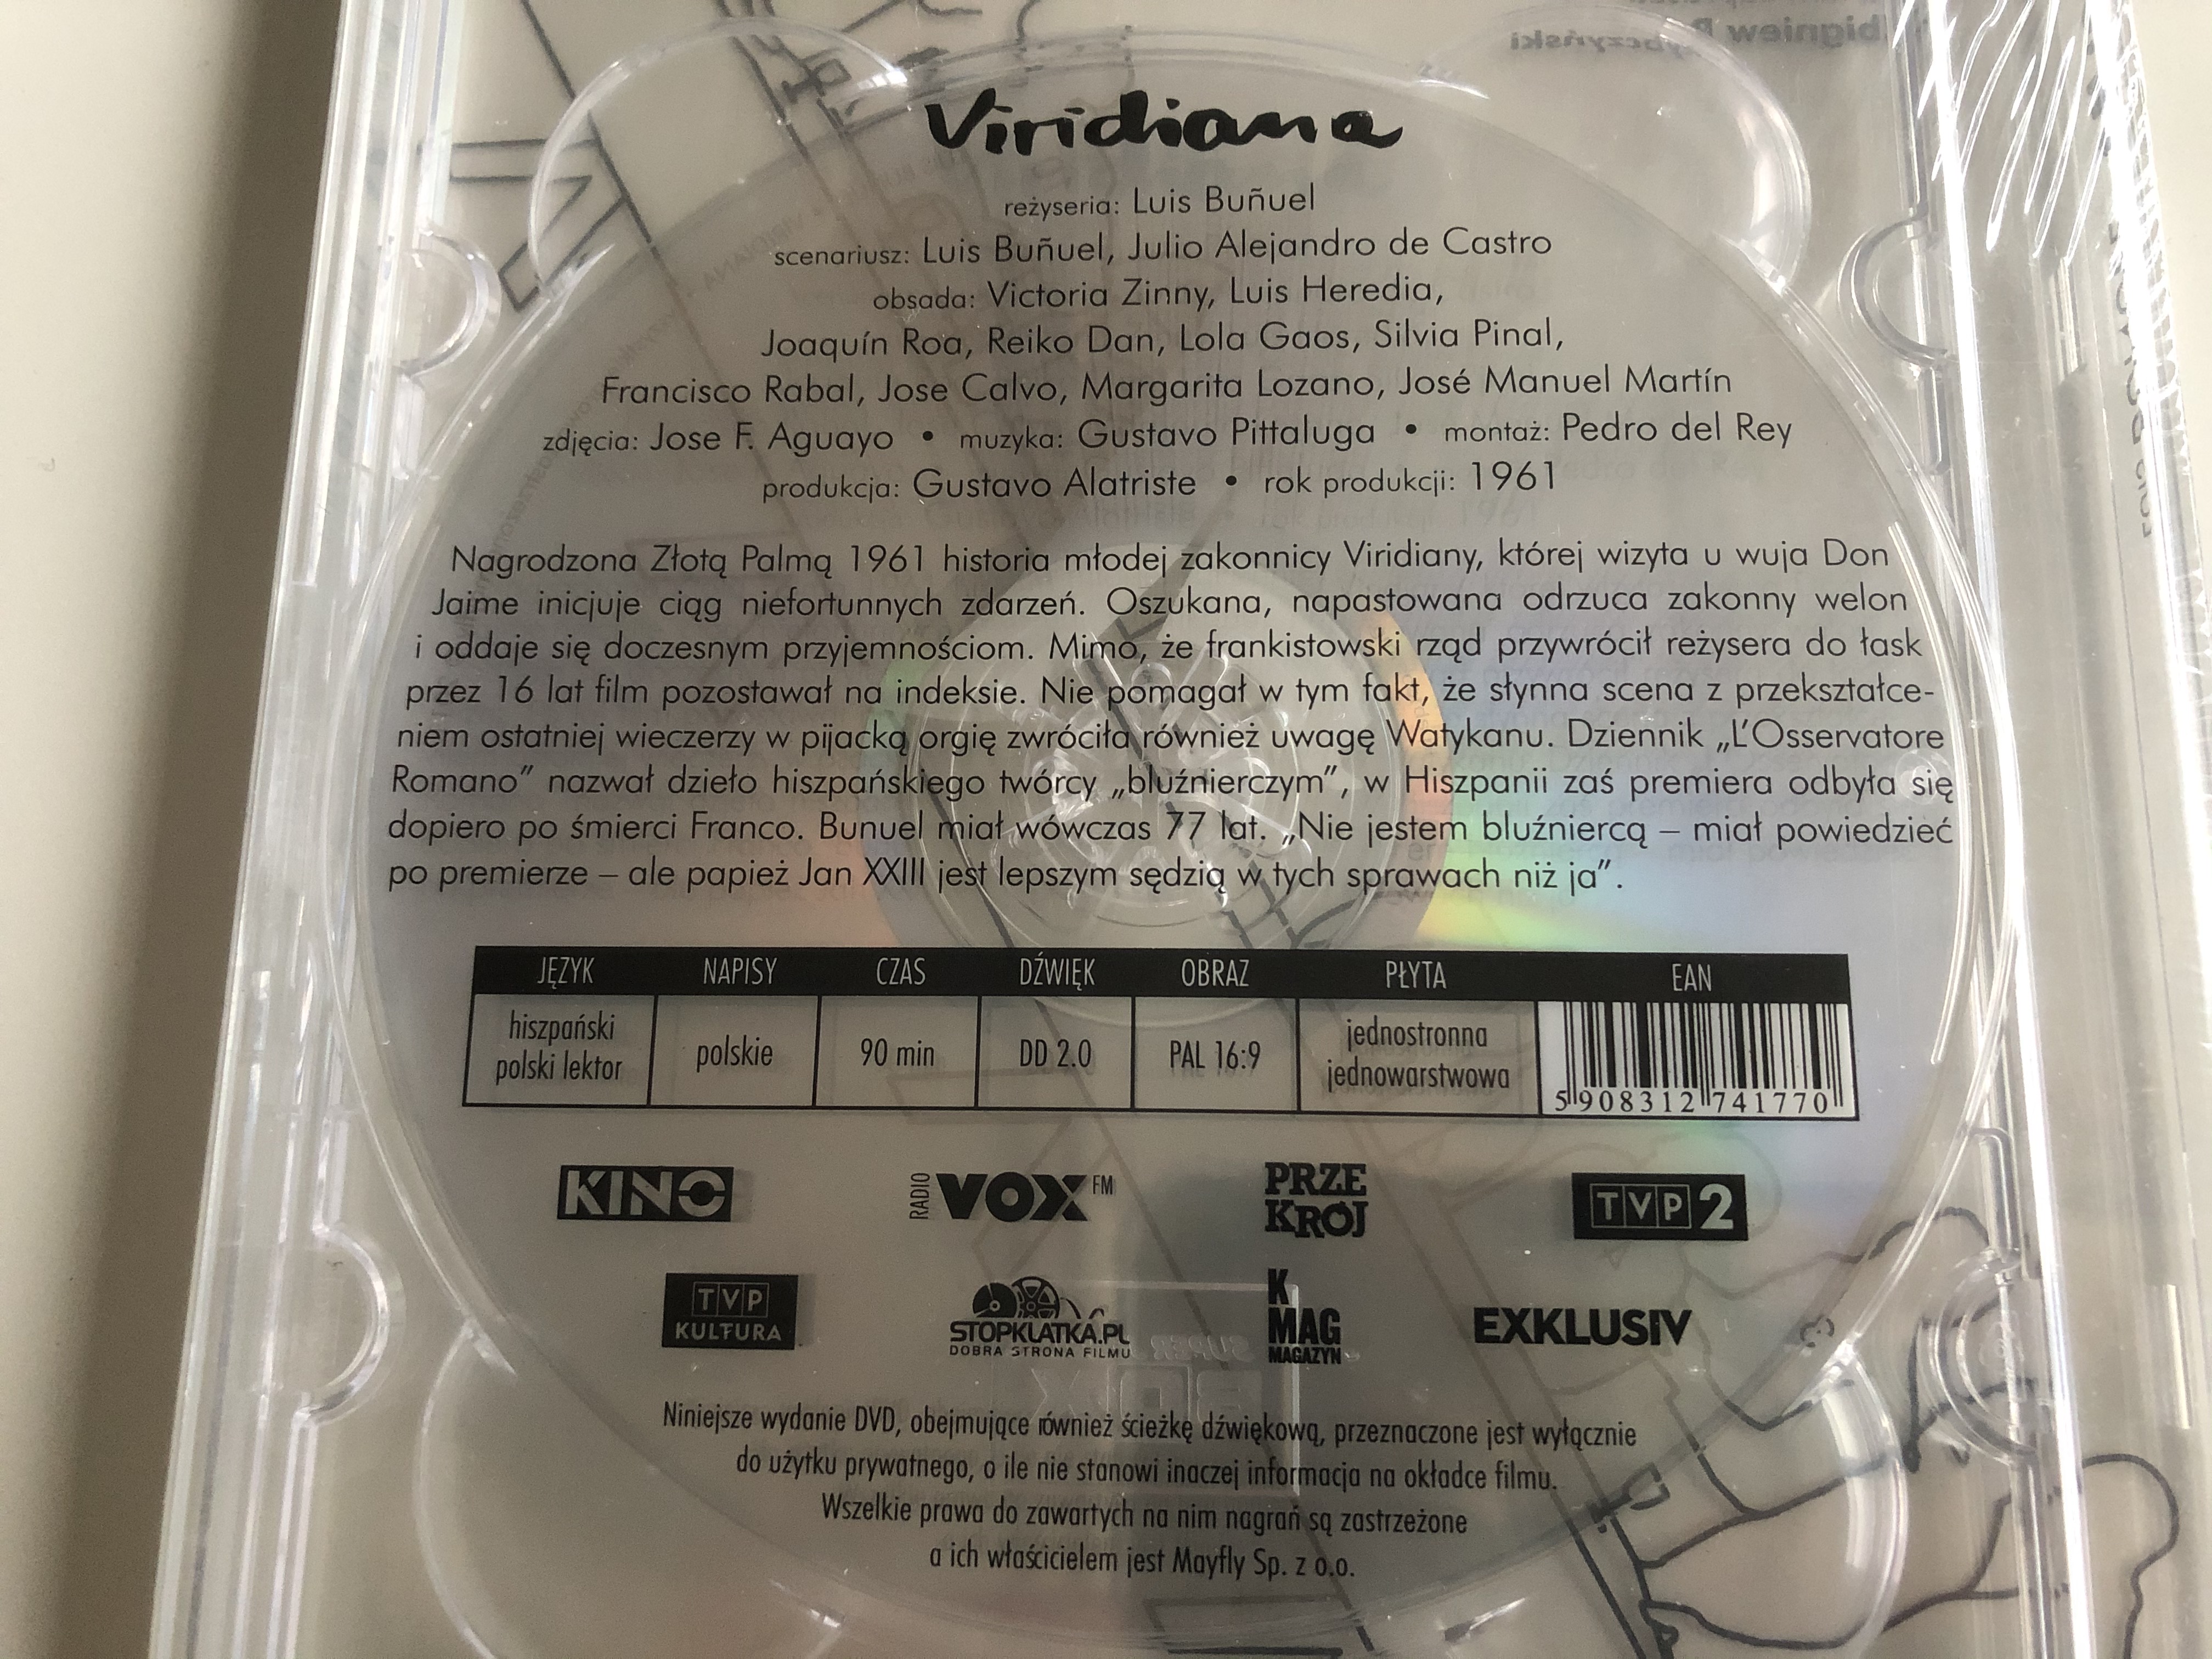 viridiana-dvd-1961-directed-by-luis-bu-uel-3.jpg